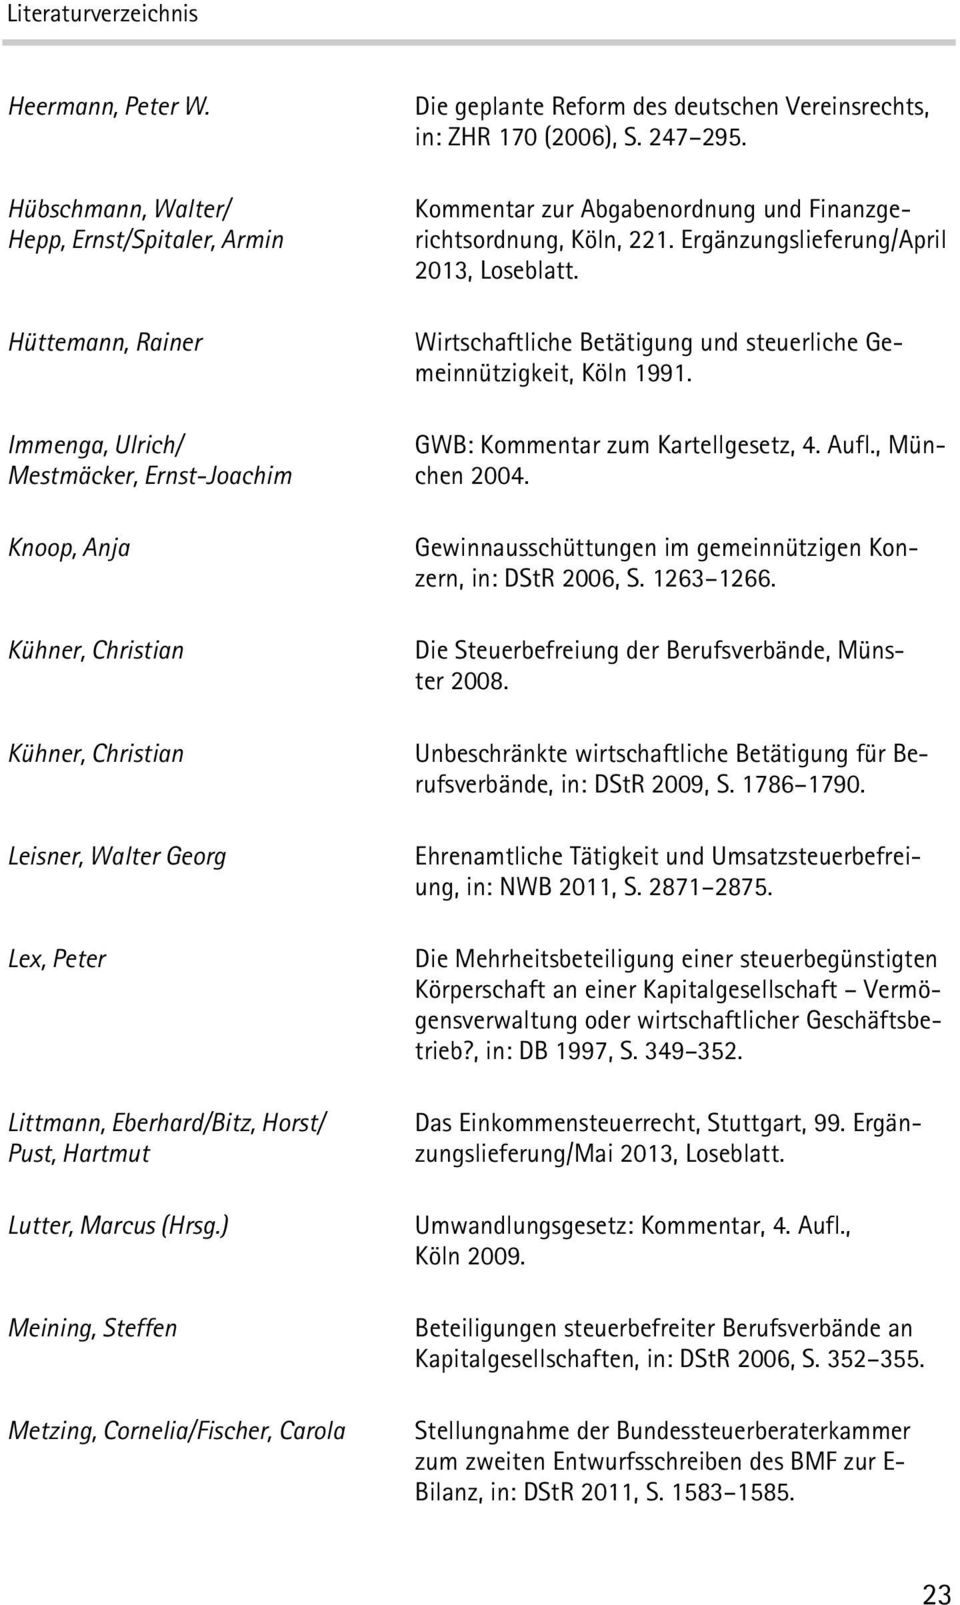 Eberhard/Bitz,Horst/ Pust, Hartmut Lutter, Marcus (Hrsg.) Meining, Steffen Metzing, Cornelia/Fischer,Carola Die geplante Reform des deutschen Vereinsrechts, in: ZHR 170 (2006), S.247 295.